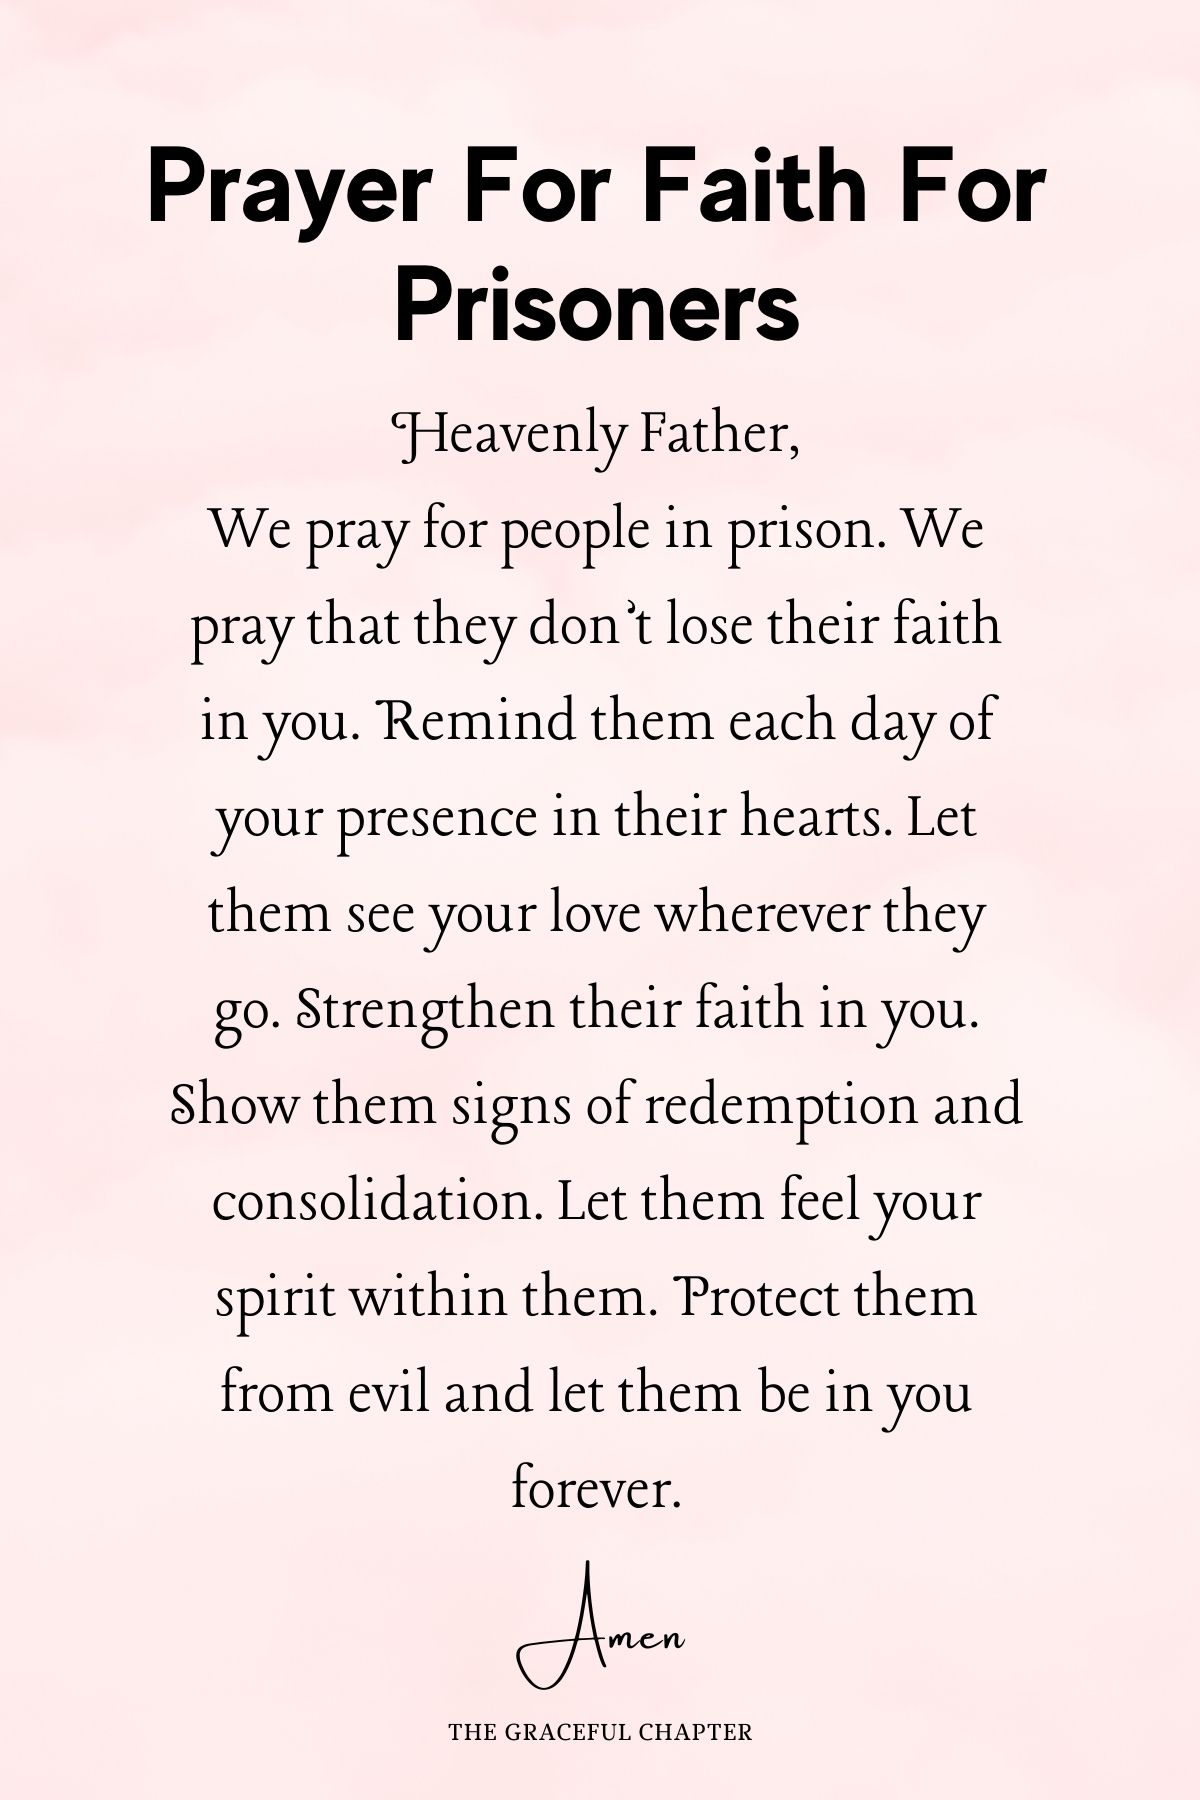 Prayer for faith for prisoners